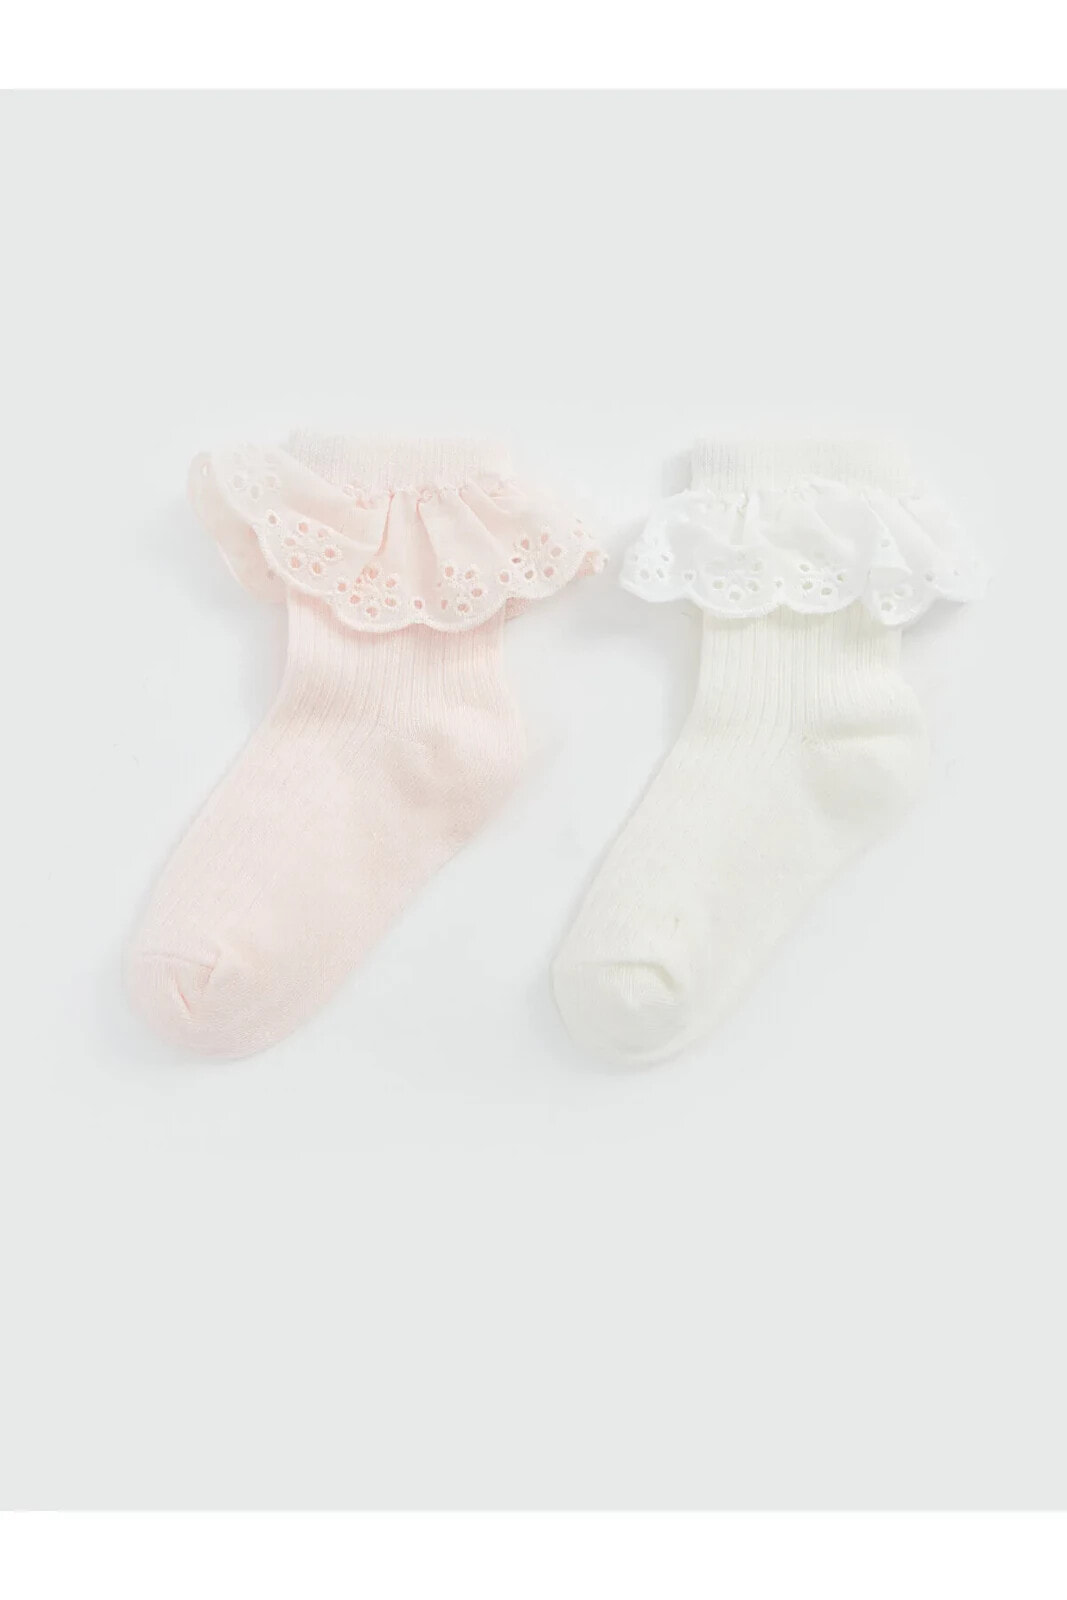 Kendinden Desenli Kız Bebek Soket Çorap 2'li